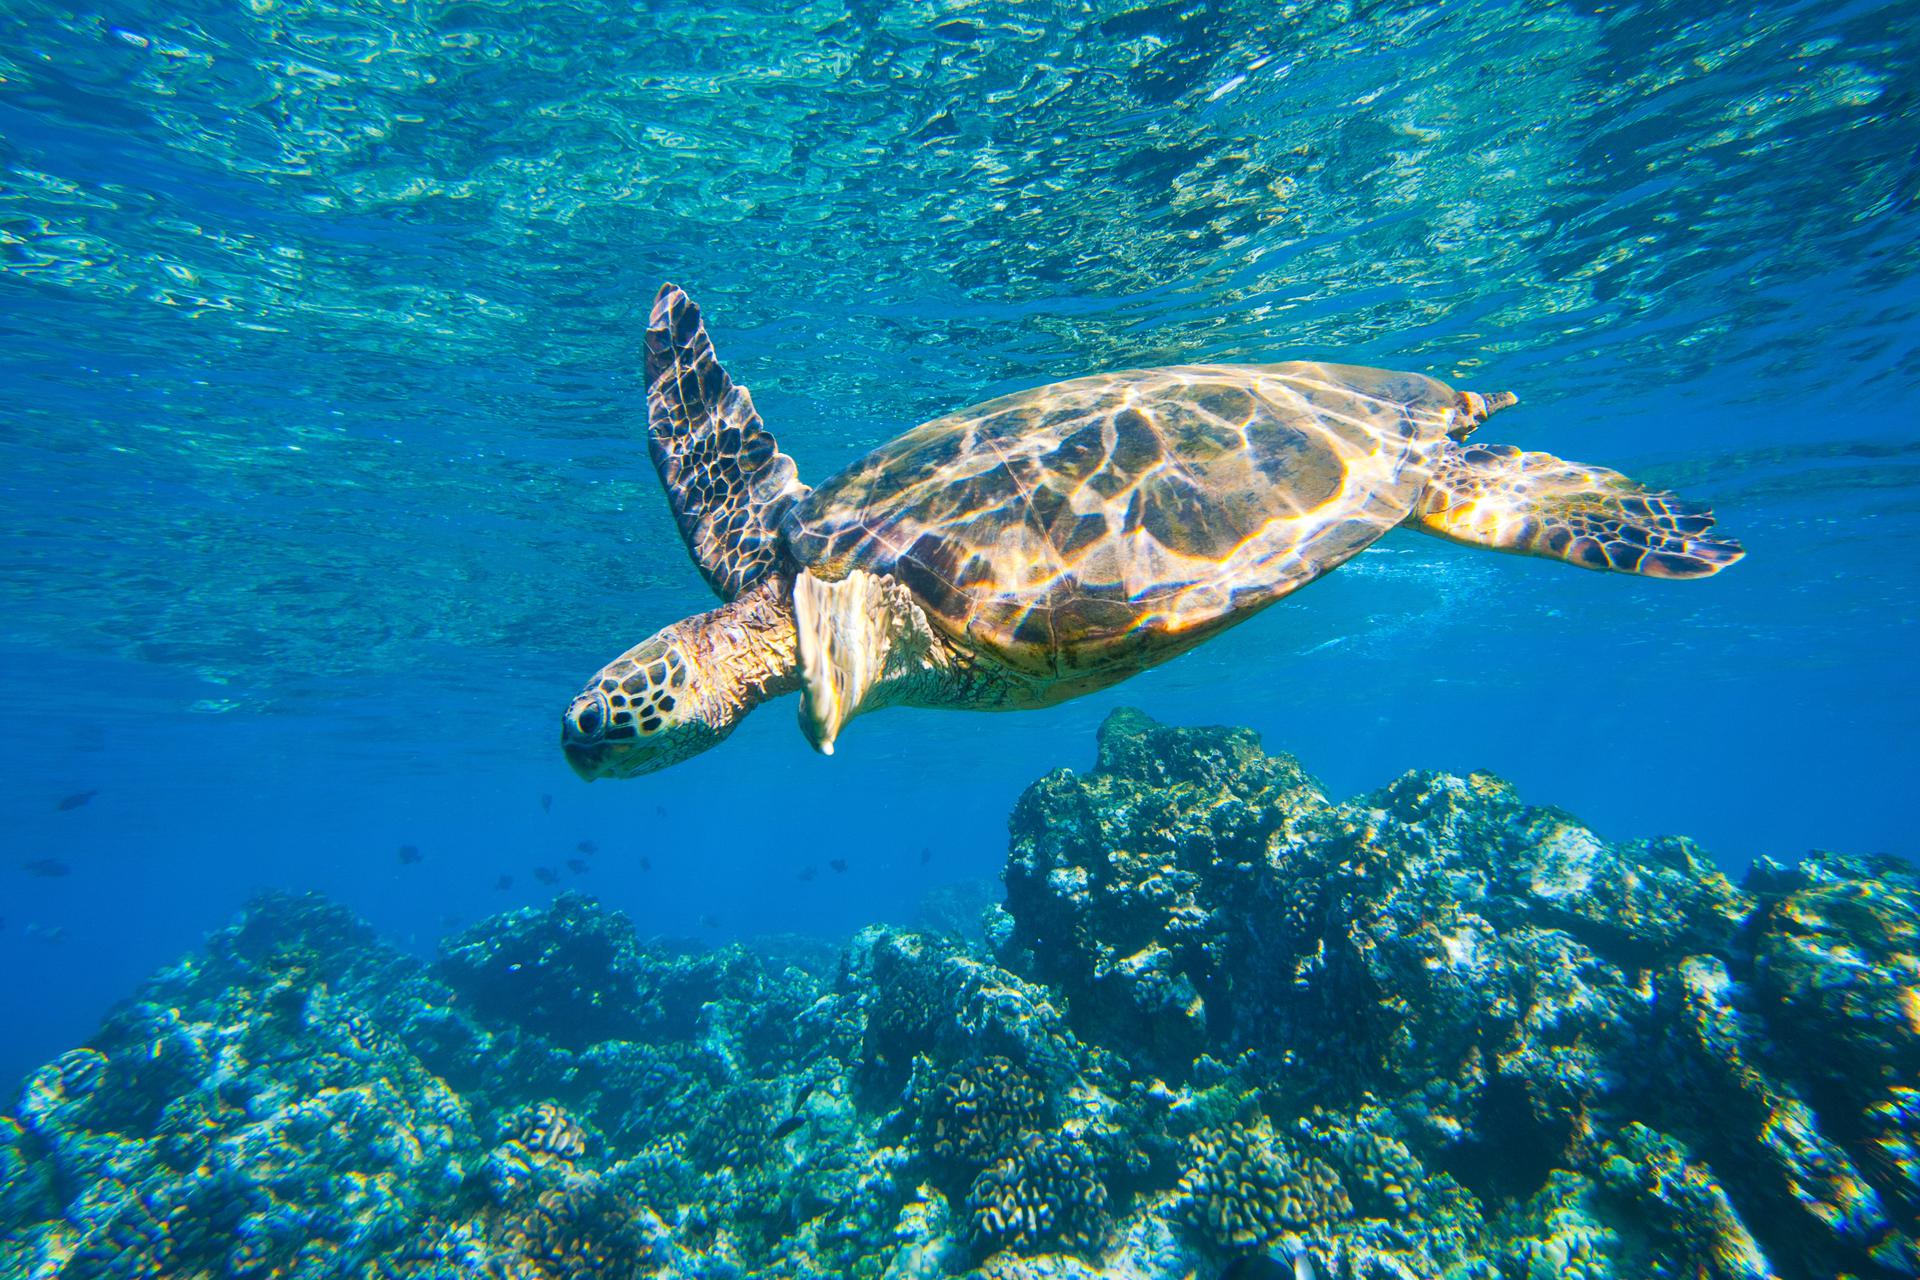 Hawaiian green sea turtle swimming in the blue waters